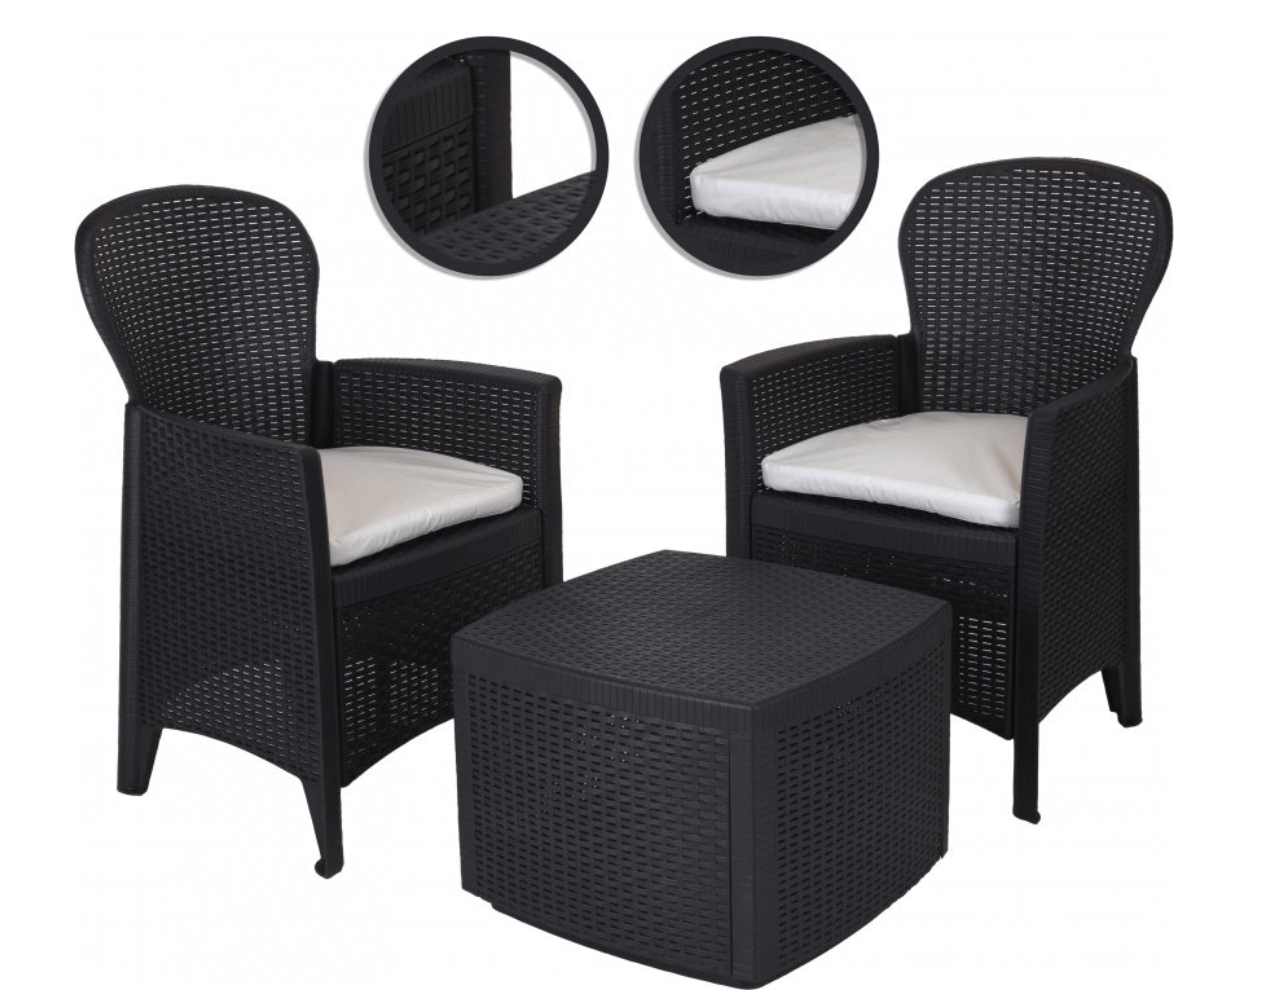 3 Piece Outdoor Indoor Patio Garden Table 2 Chair Rattan Style Furniture Set